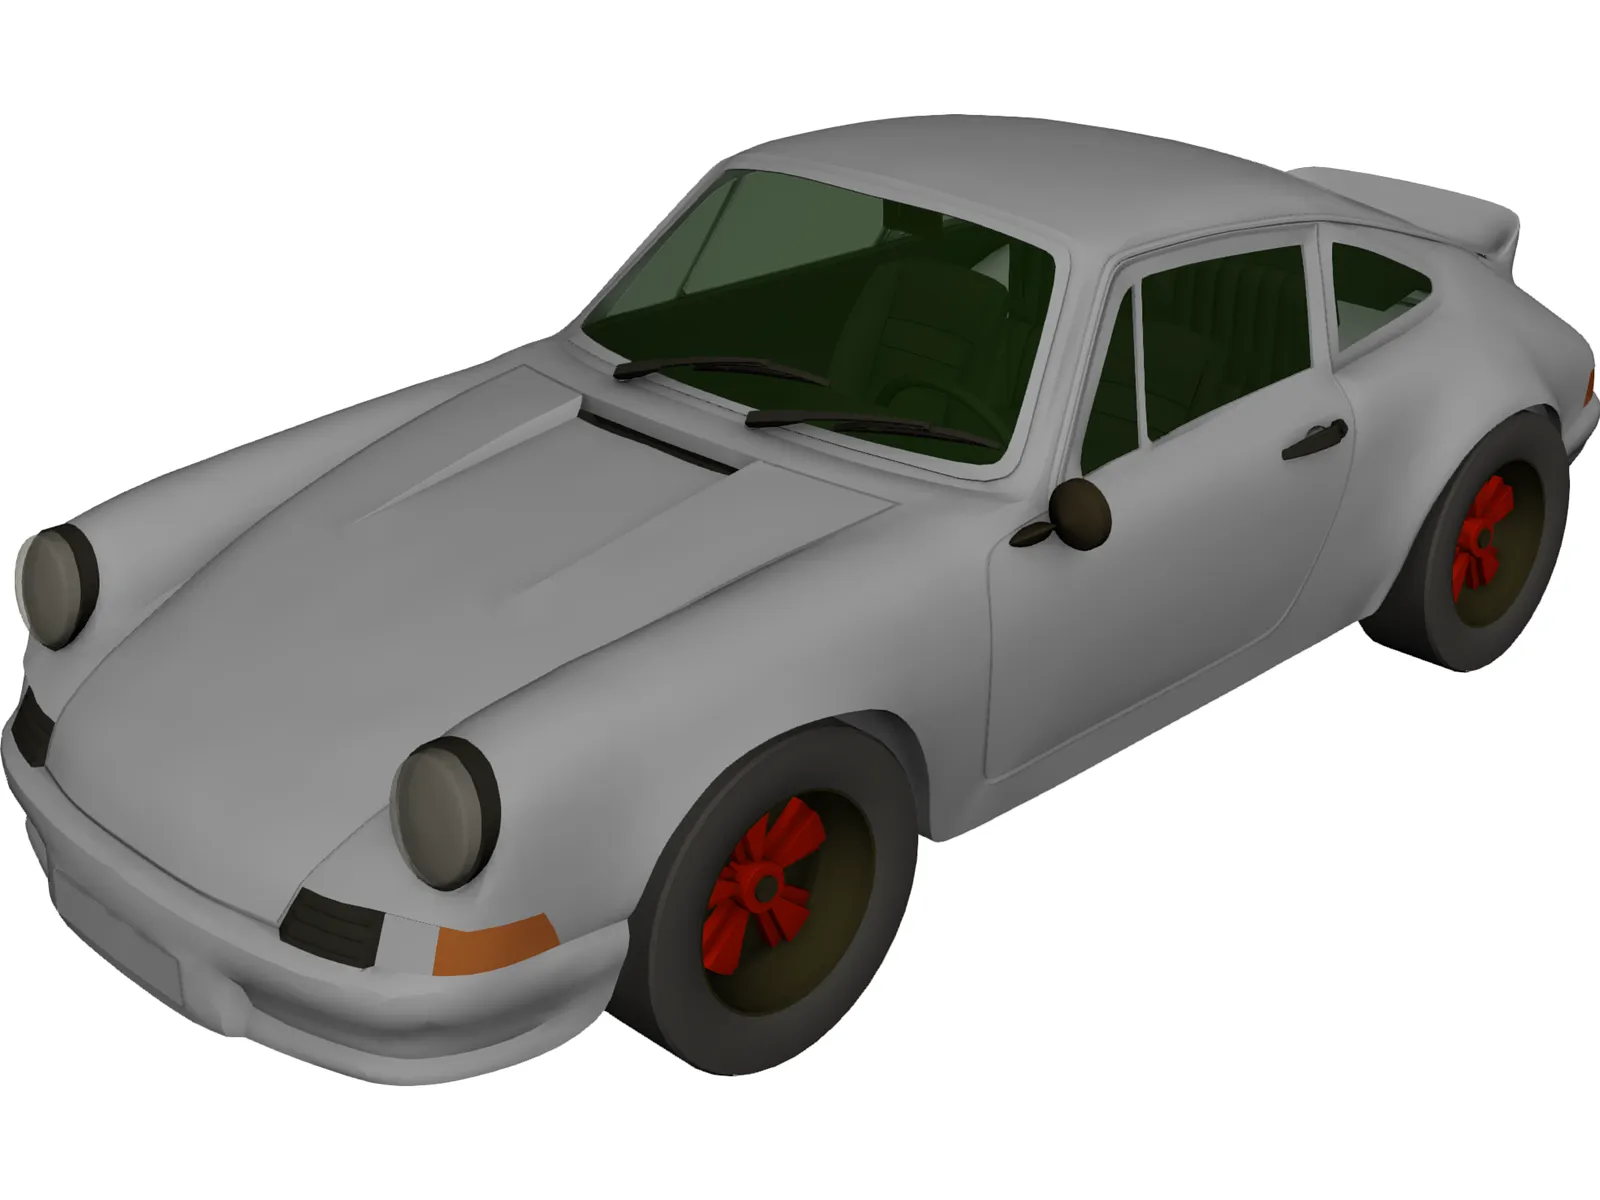 Porsche 911 Carrera 3D Model